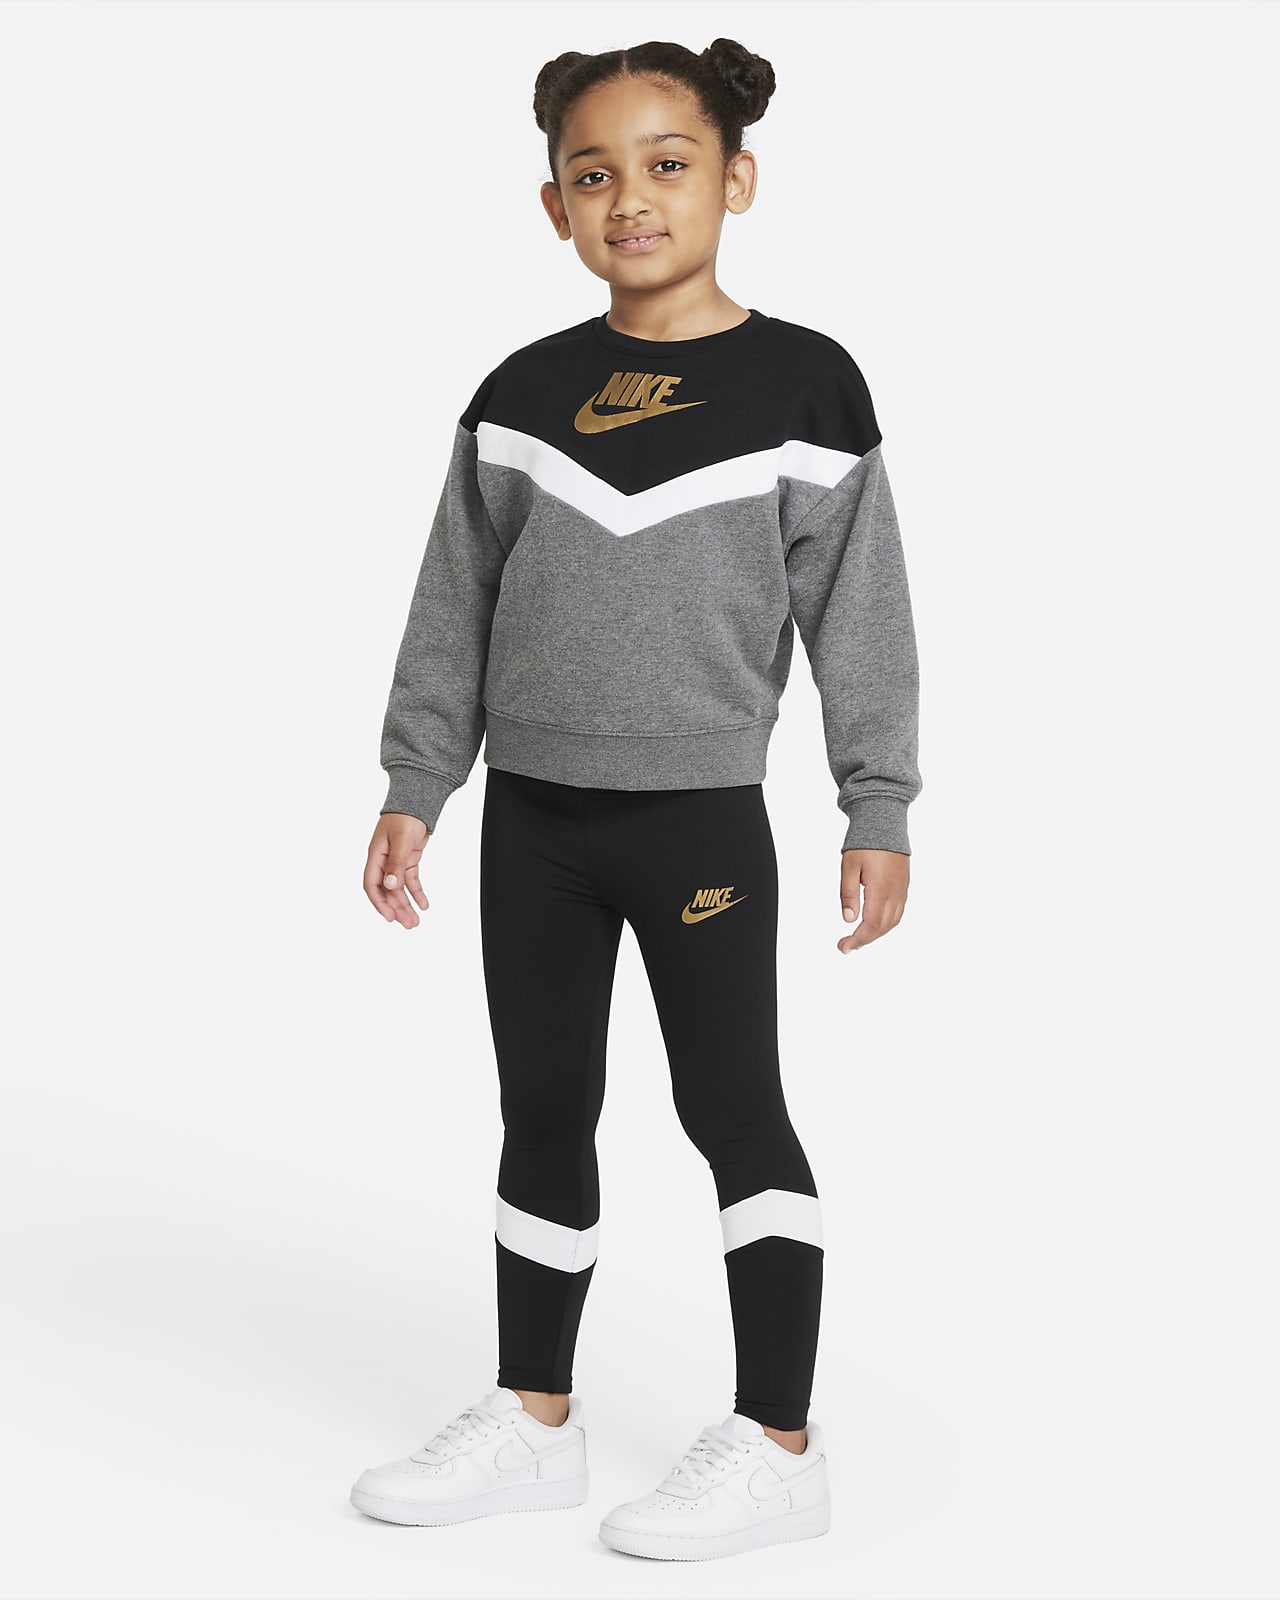 Nike Little Kids' Crew